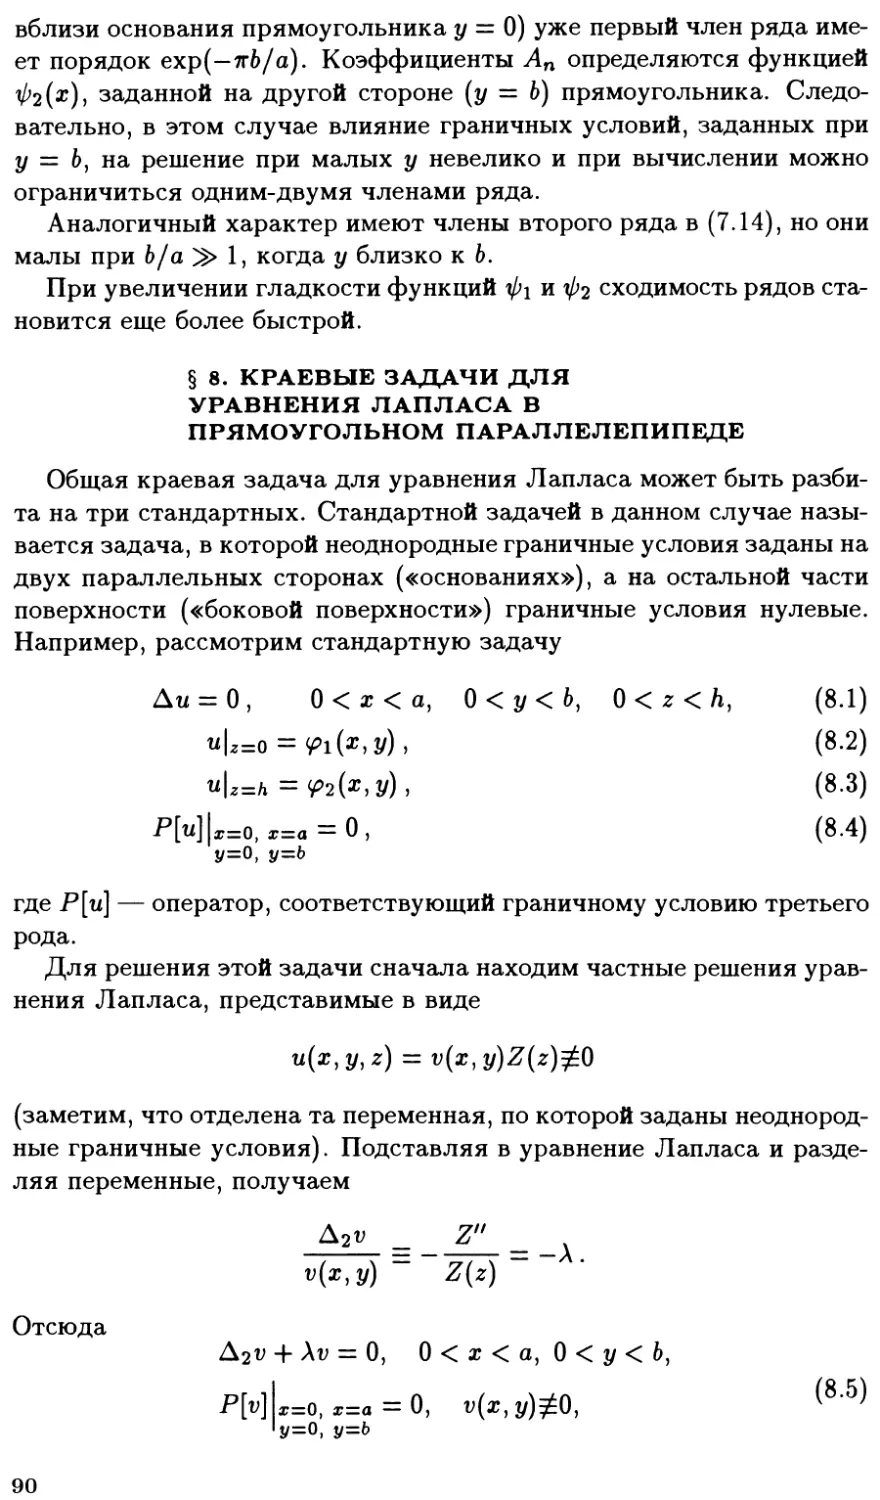 §8. Краевые задачи для уравнения Лапласа в прямоугольном параллелепипеде